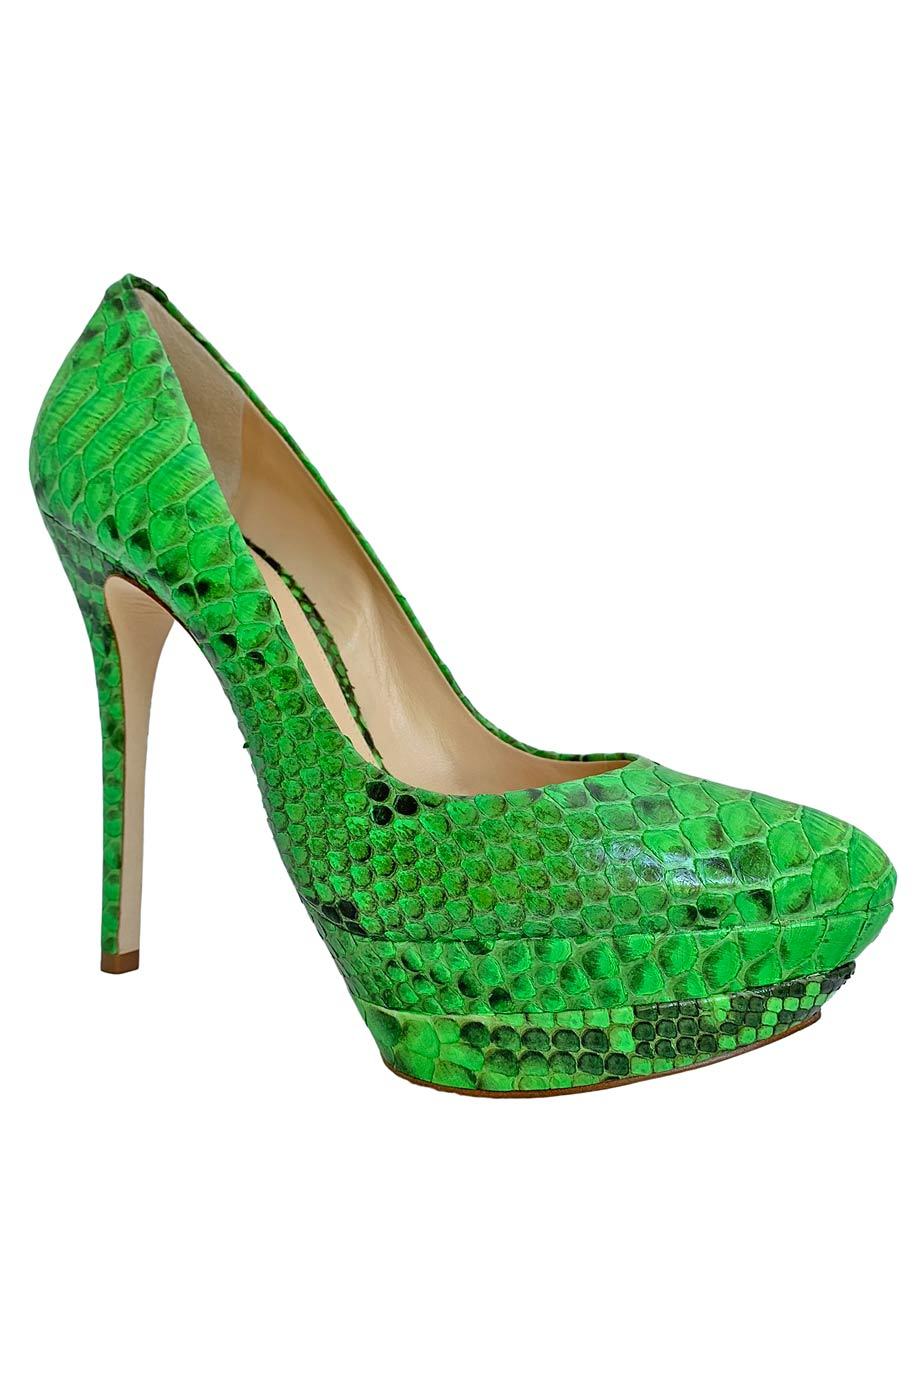 neon green high heel shoes